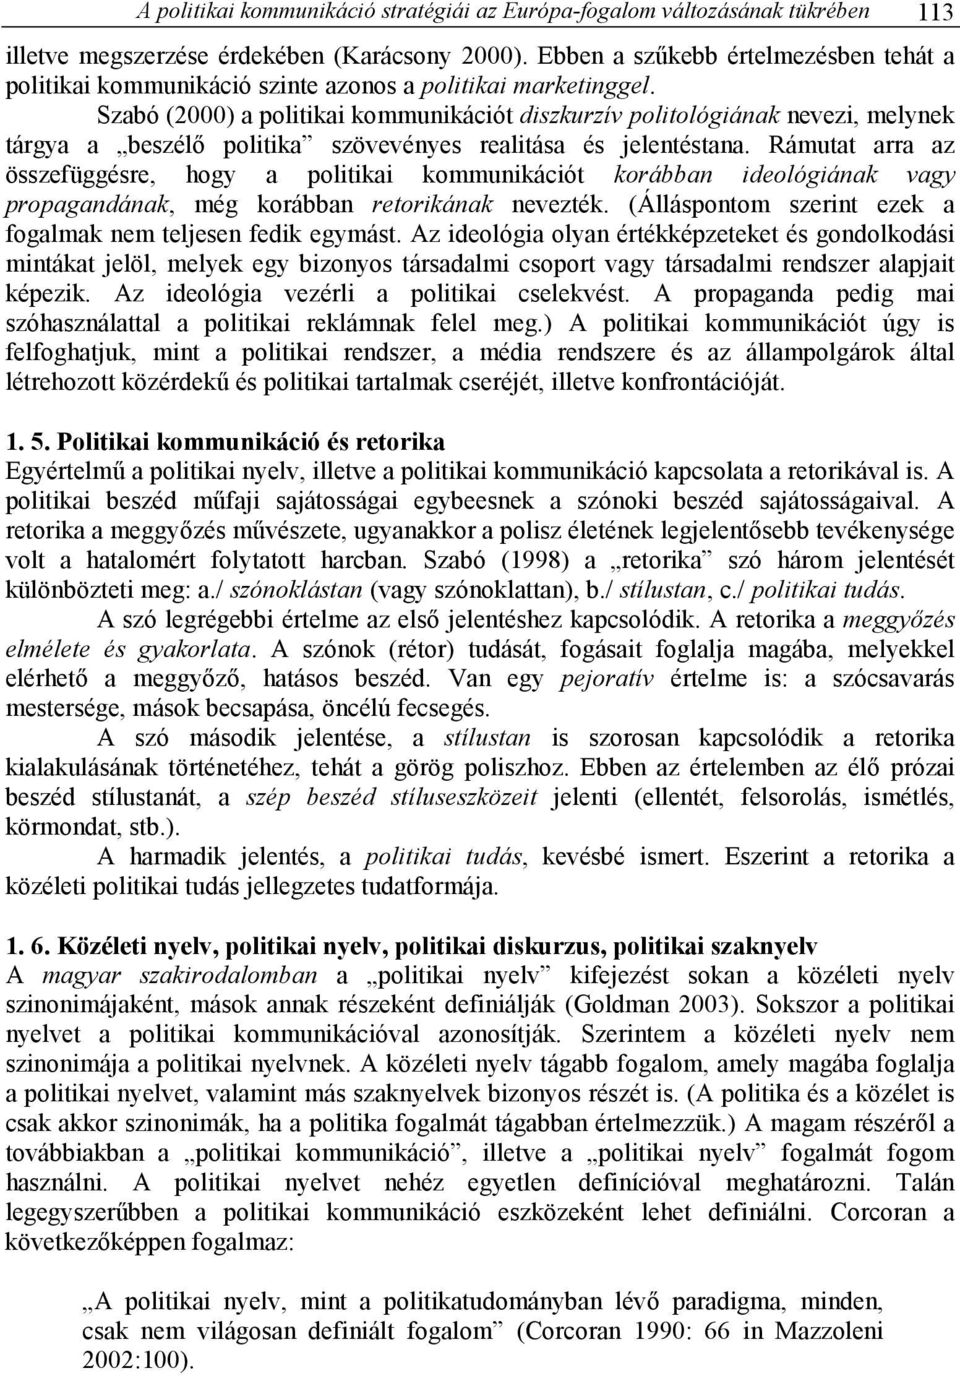 Szabó (2000) a politikai kommunikációt diszkurzív politológiának nevezi, melynek tárgya a beszélı politika szövevényes realitása és jelentéstana.